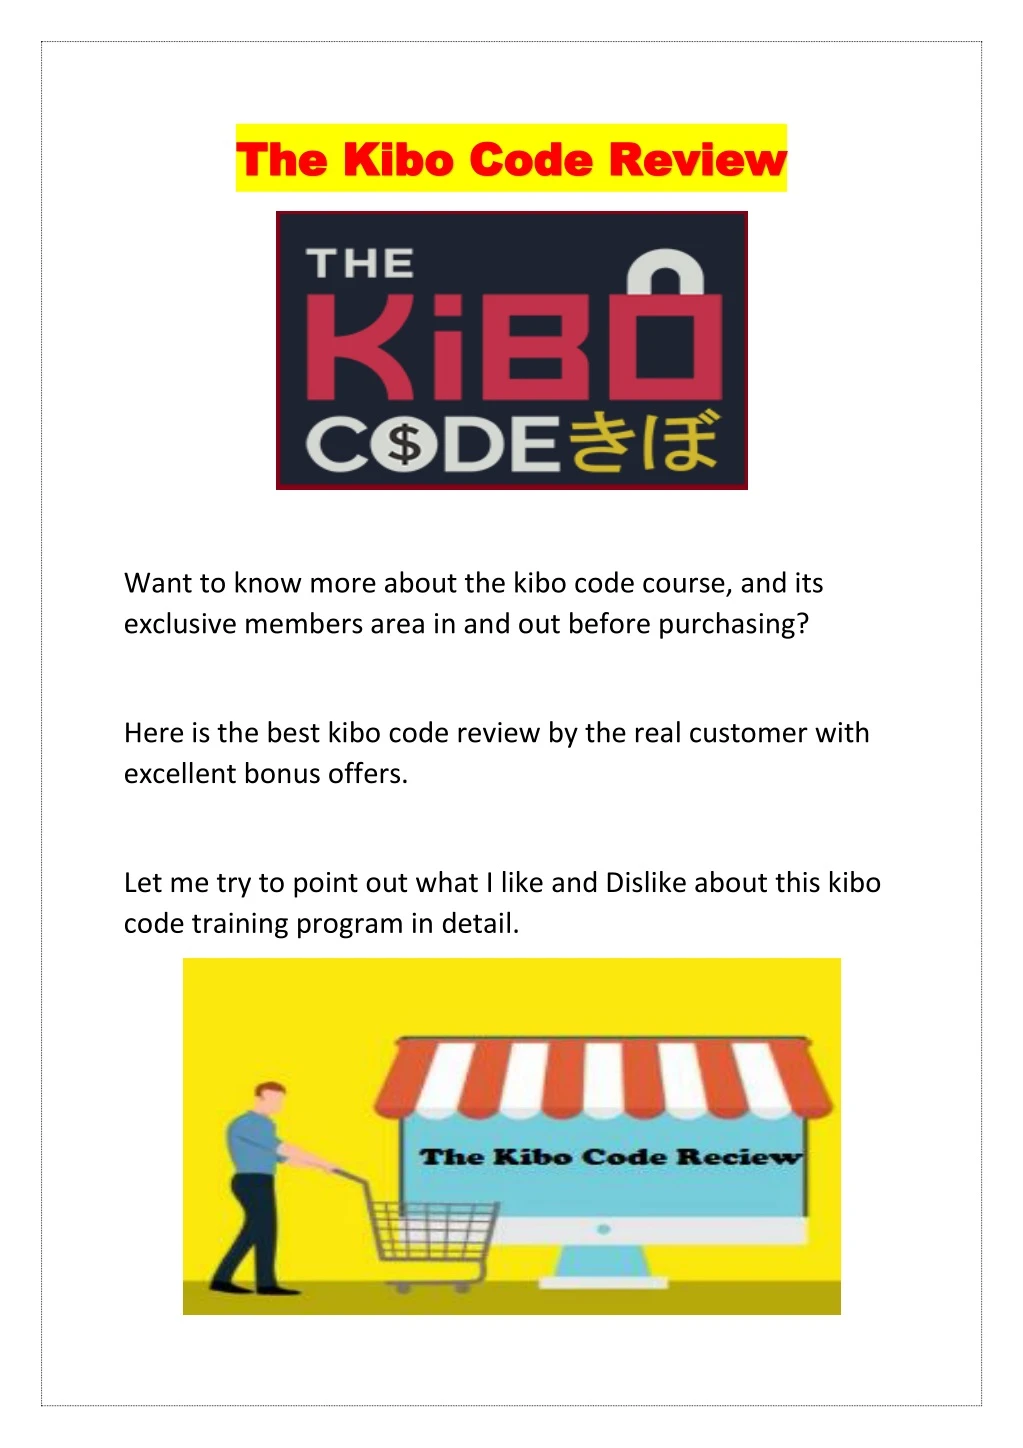 the the kibo code revie kibo code review